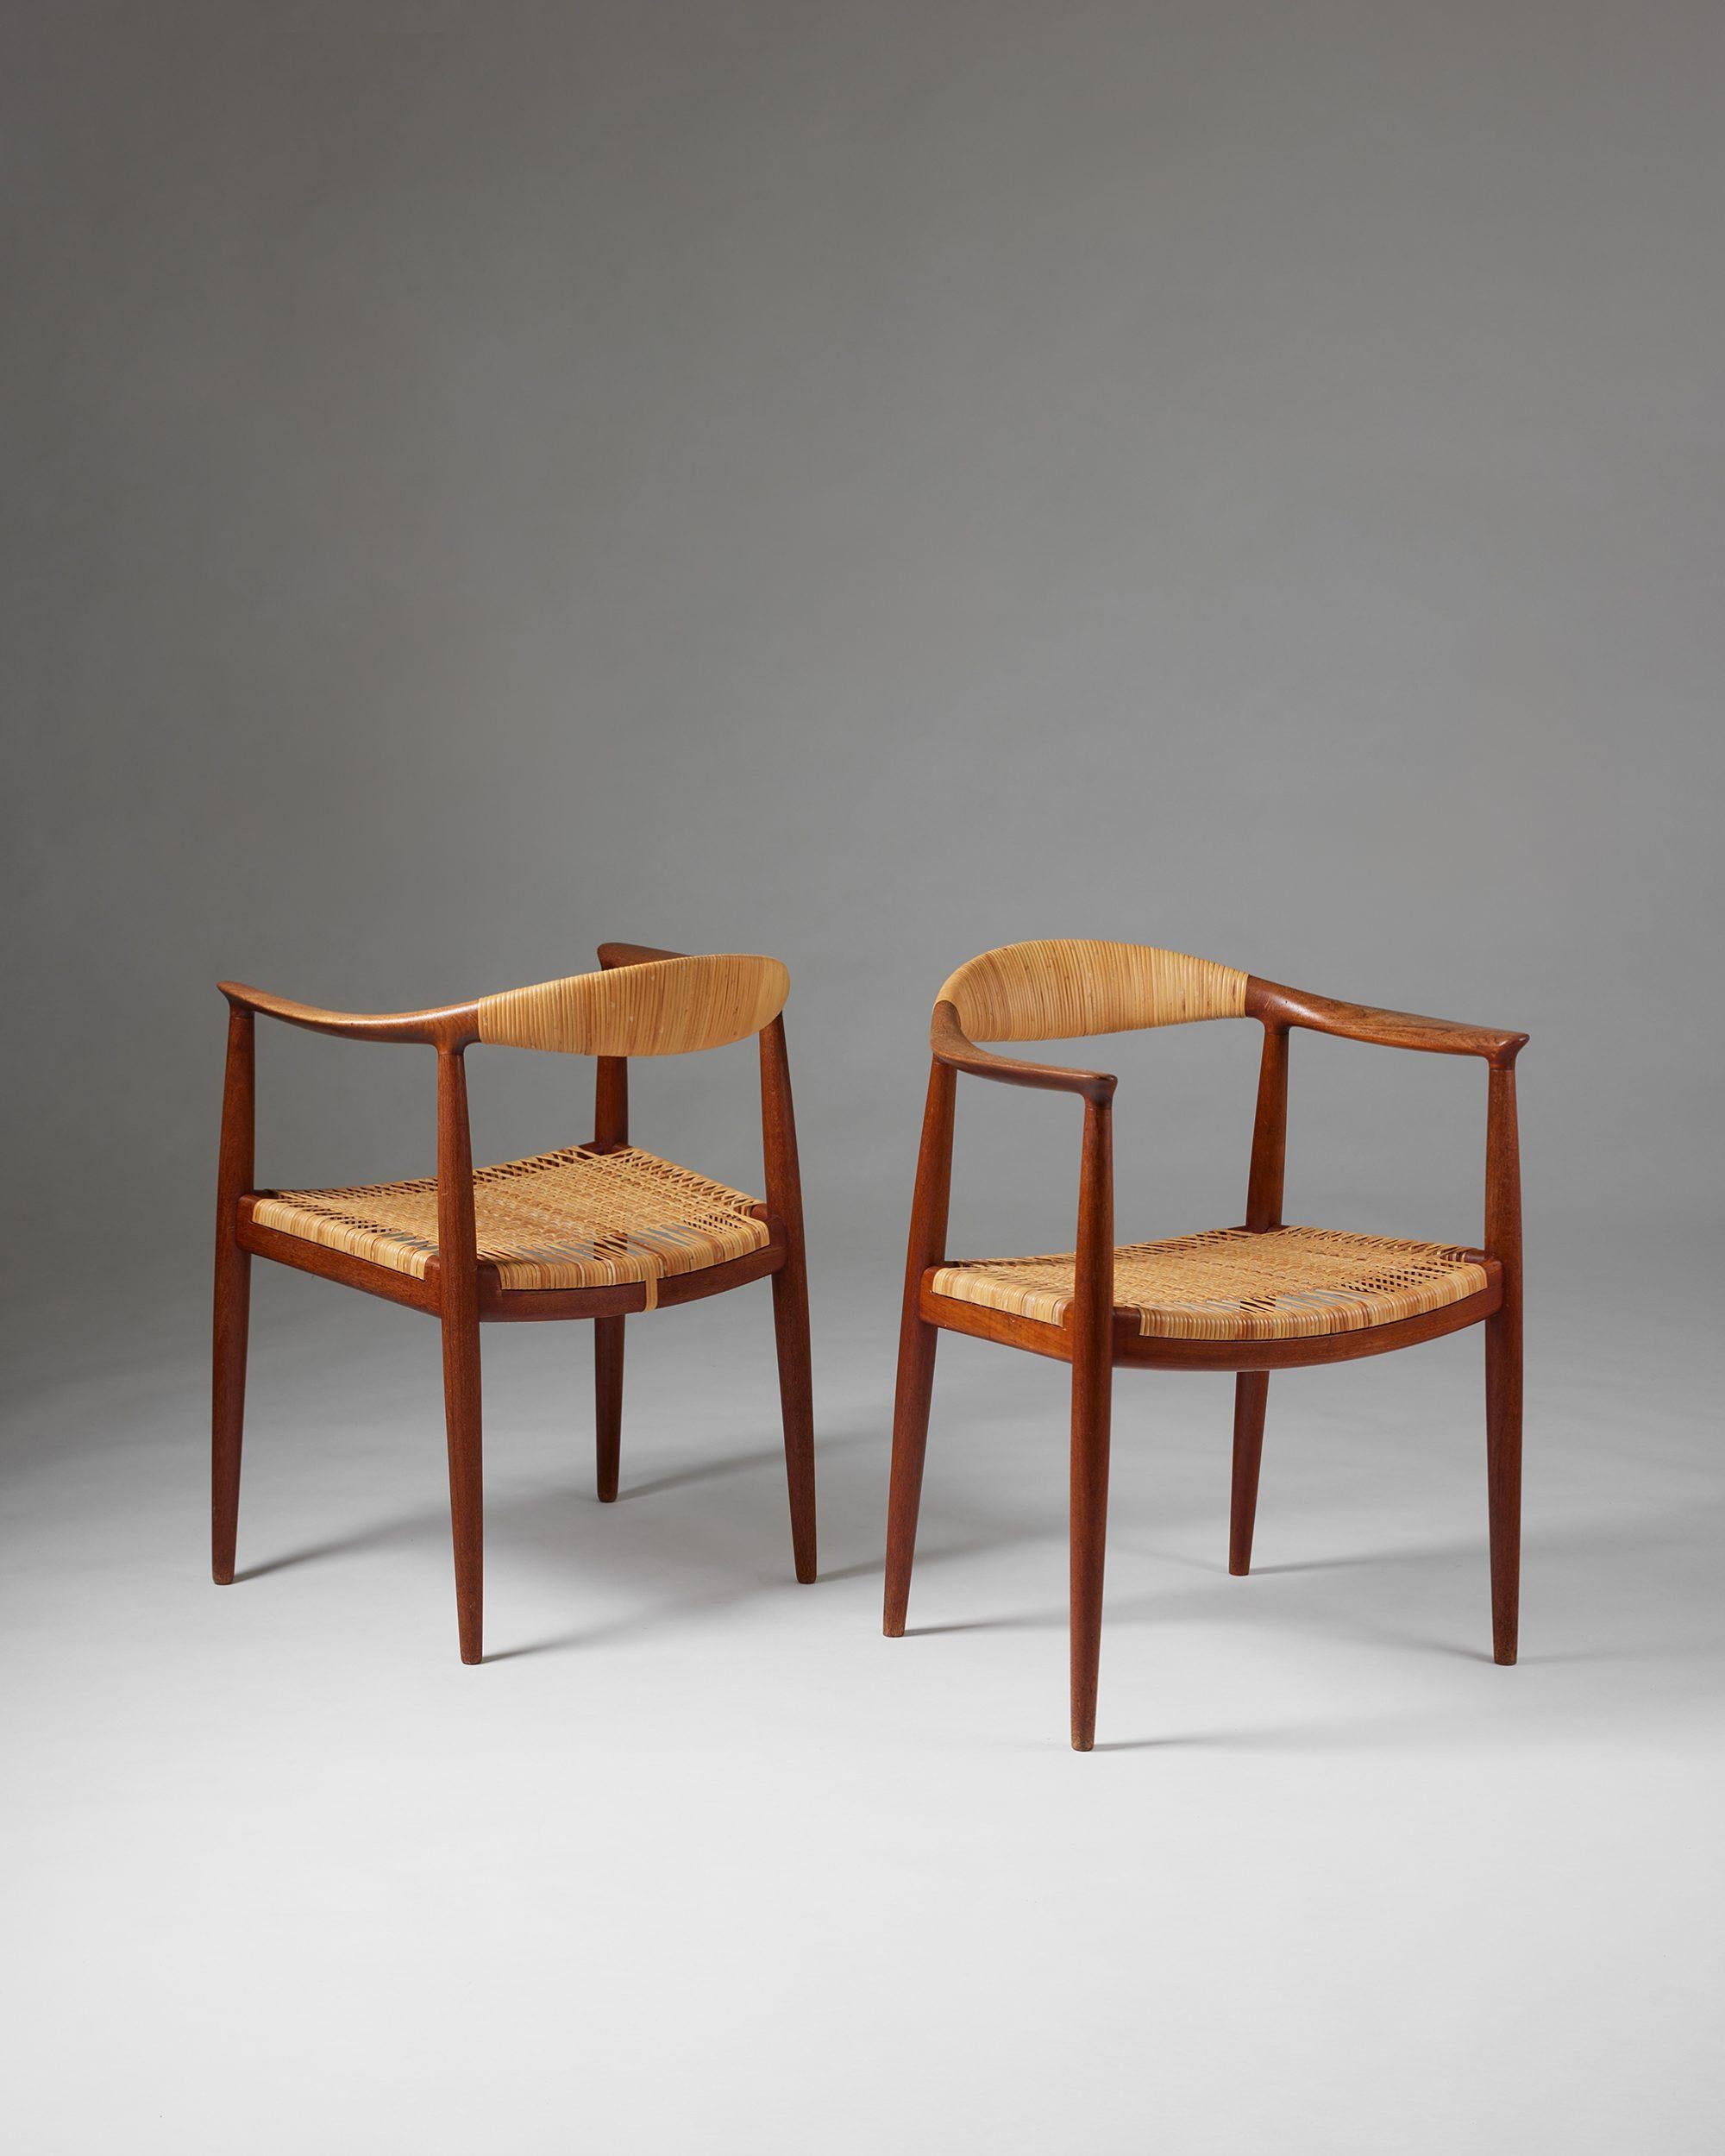 Coppia di poltrone 'The Chair' modello JH 501 disegnate da Hans J. Wegner per Hansen,
Danimarca, 1949.

Teak e canna.

Il primo modello con lo schienale a canne.

Timbrato.

H. H. 76 cm
L: 63 cm
D: 50 cm
Altezza del braccio: 68,5 cm
Altezza del